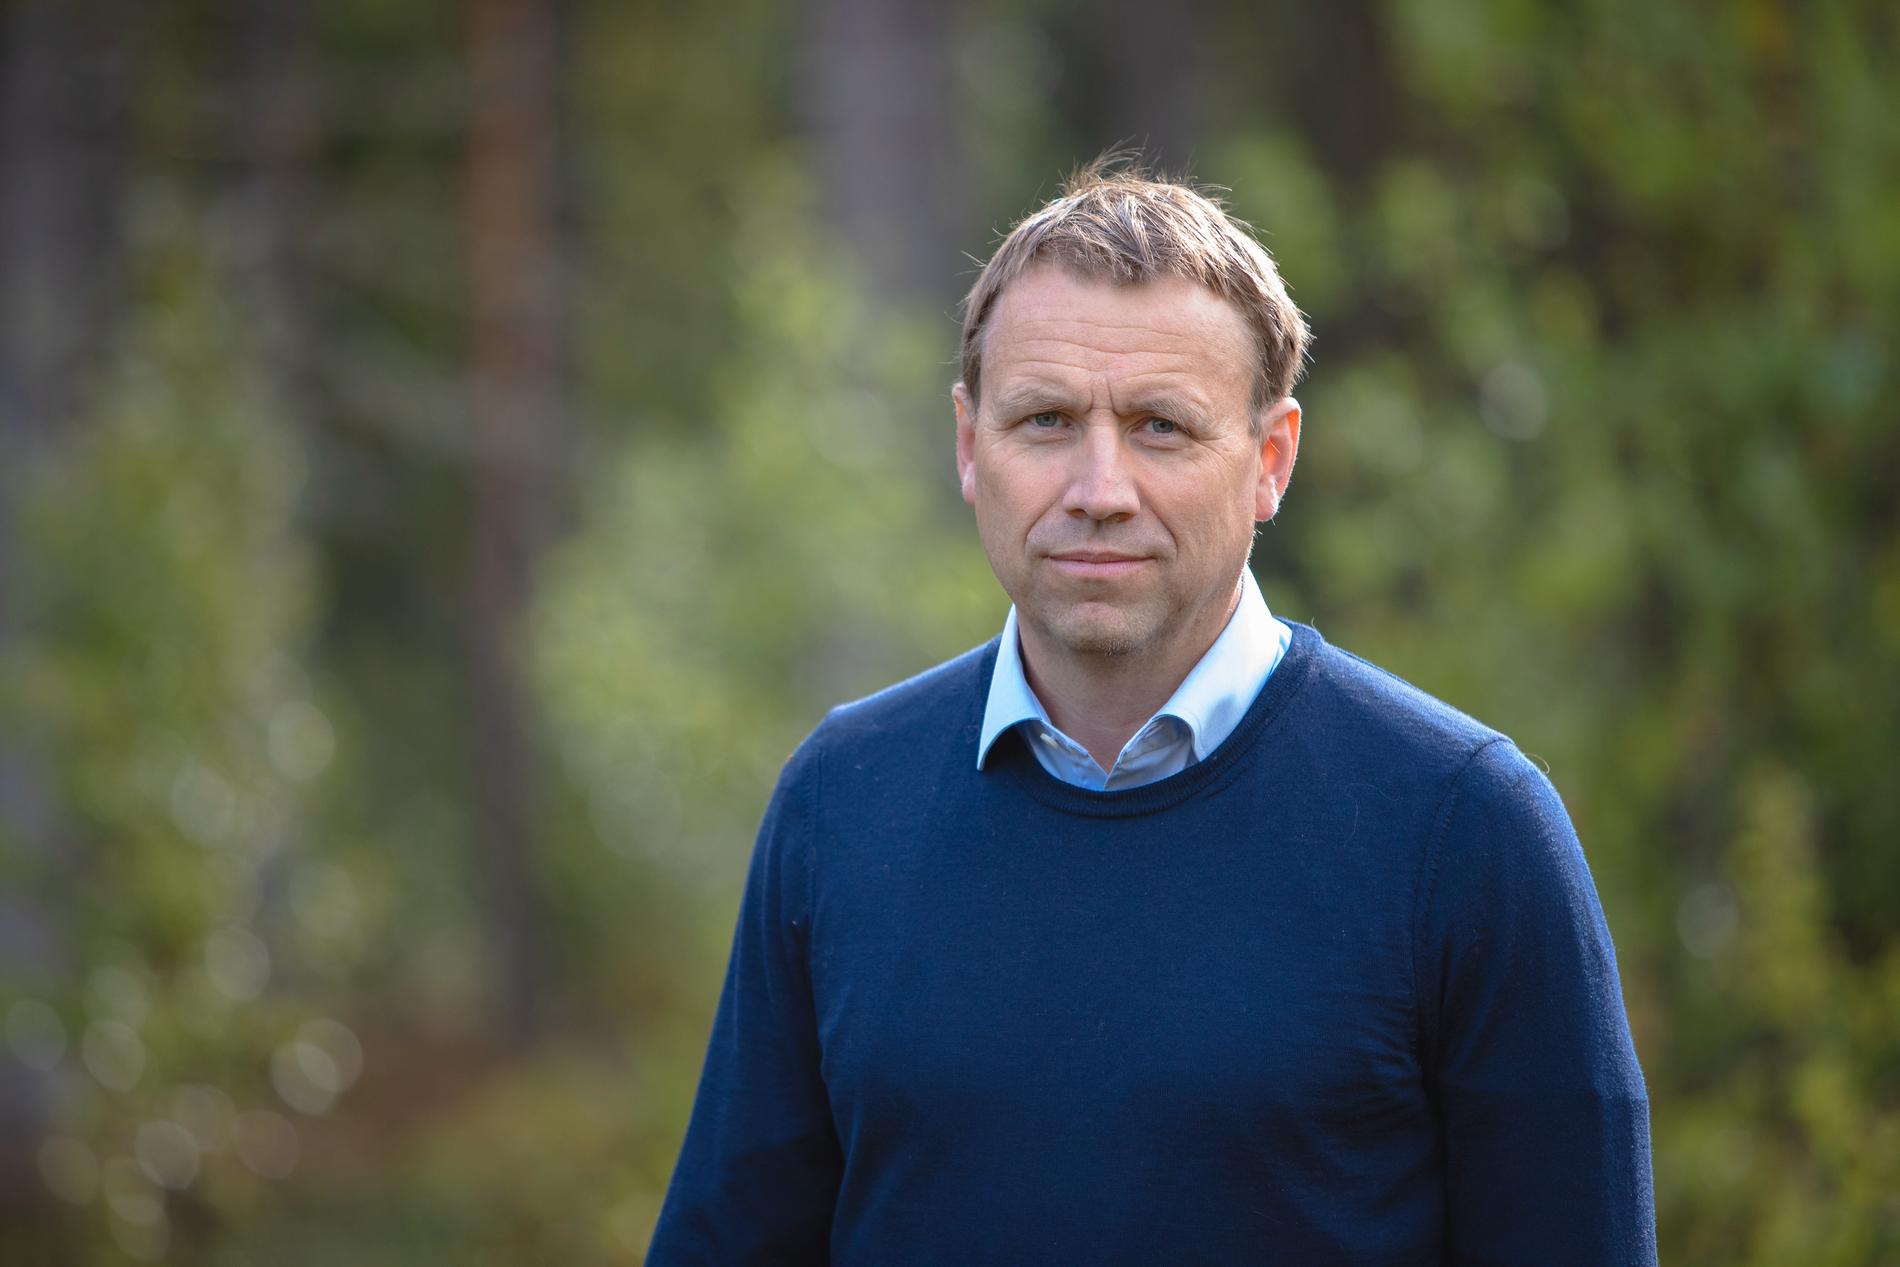  Johan Olofsson, professor i ekologi vid Umeå universitet och ordförande för Oikos.